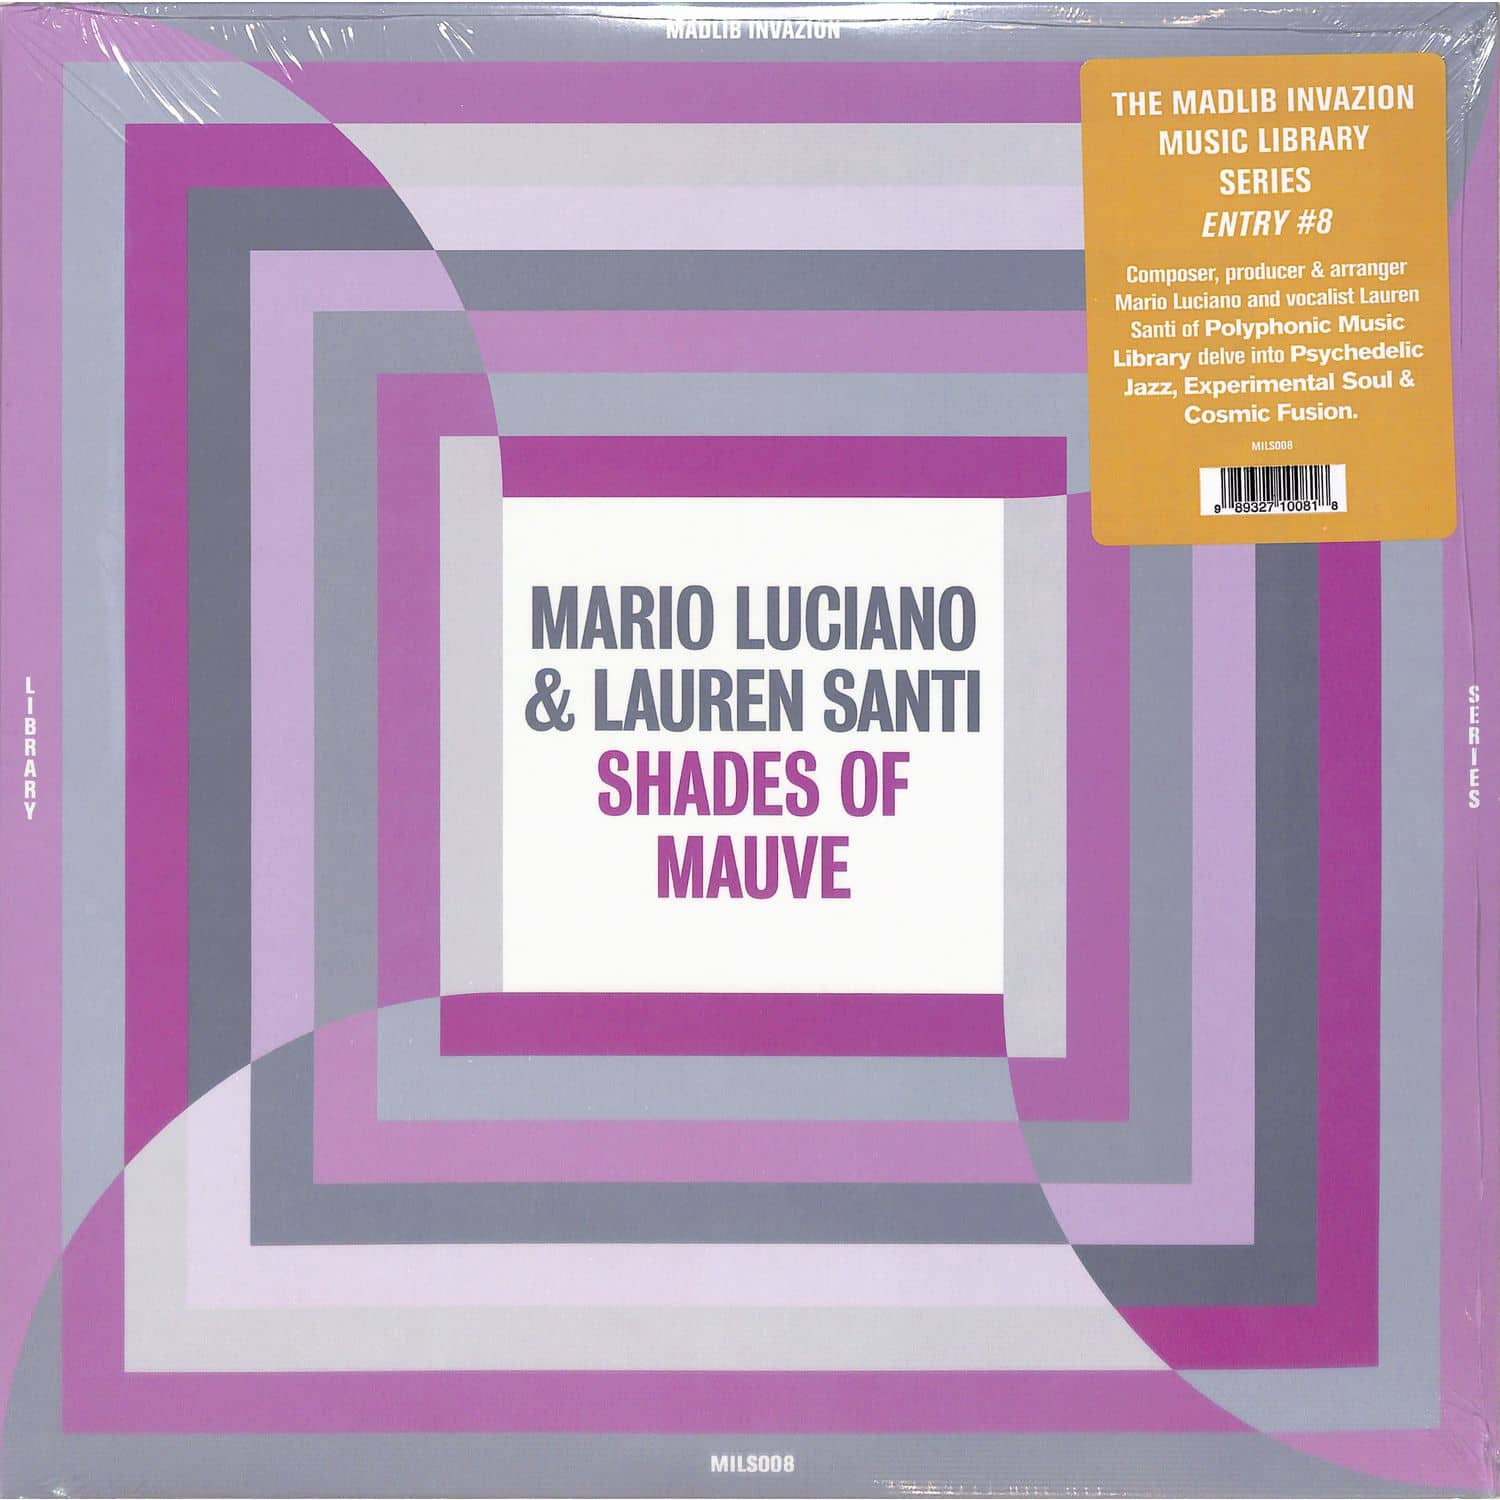 Mario Luciano & Lauren Santi - SHADES OF MAUVE 